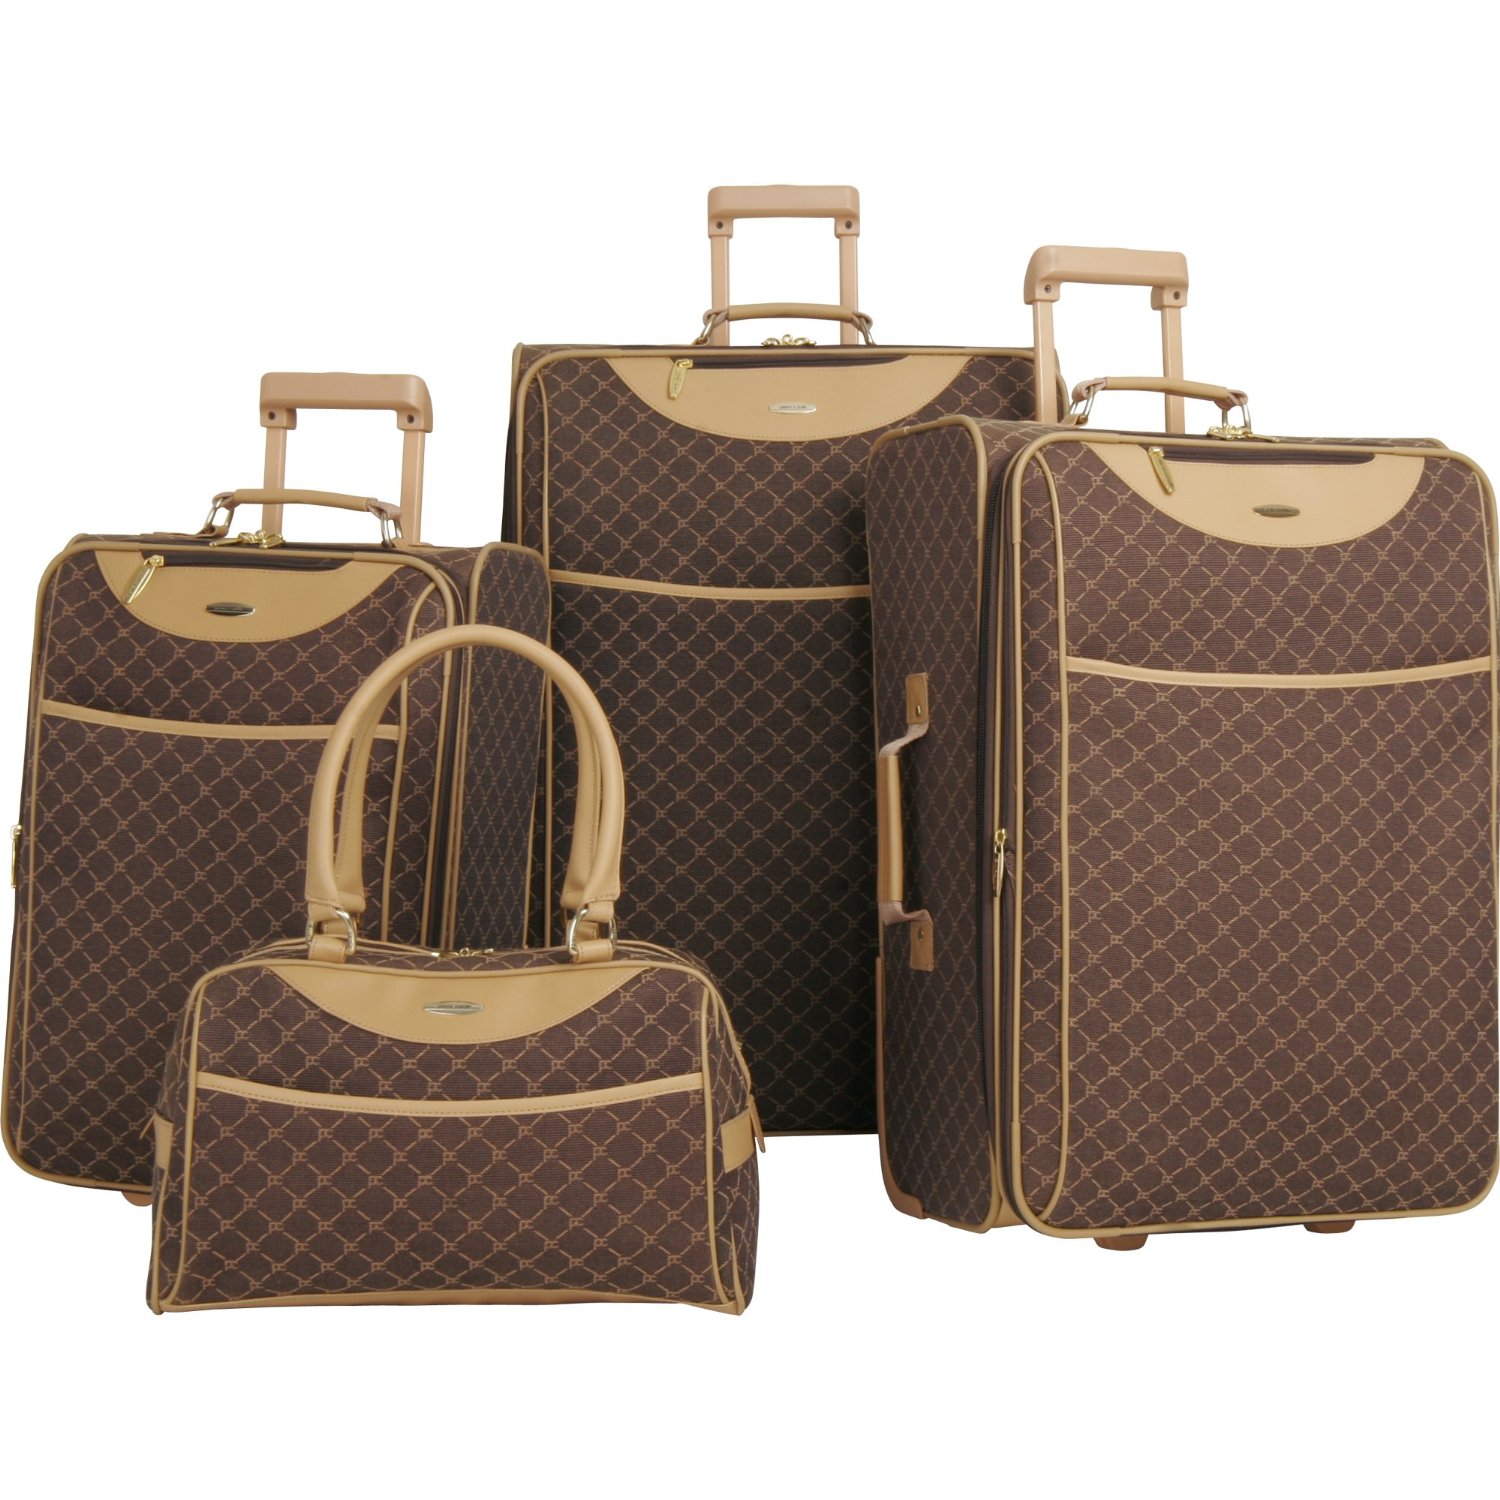 皮尔-卡丹 Pierre Cardin Luggage Pc Signature 经典款4件套行李箱 $155.74